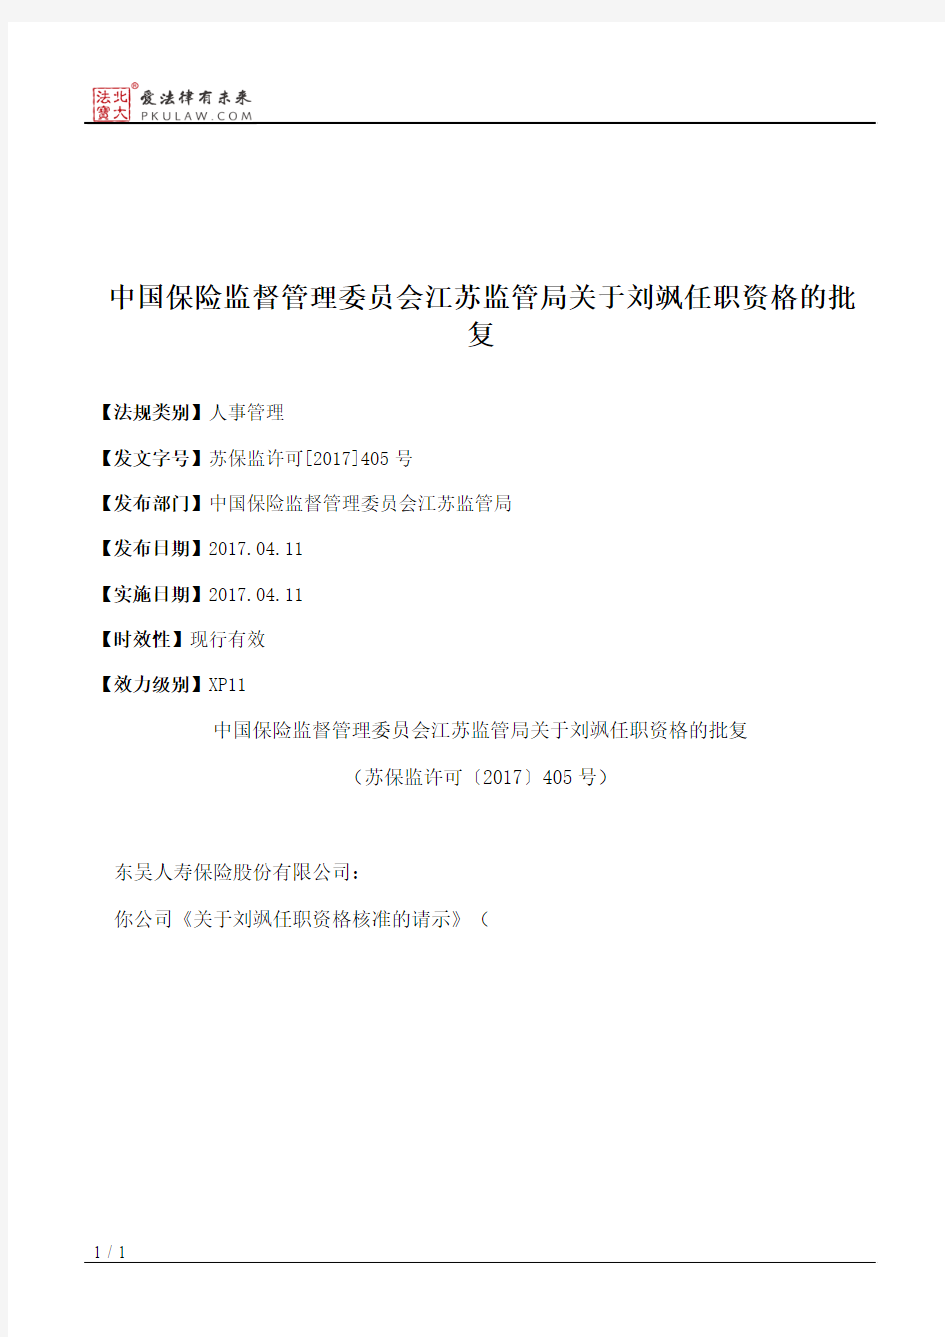 中国保险监督管理委员会江苏监管局关于刘飒任职资格的批复